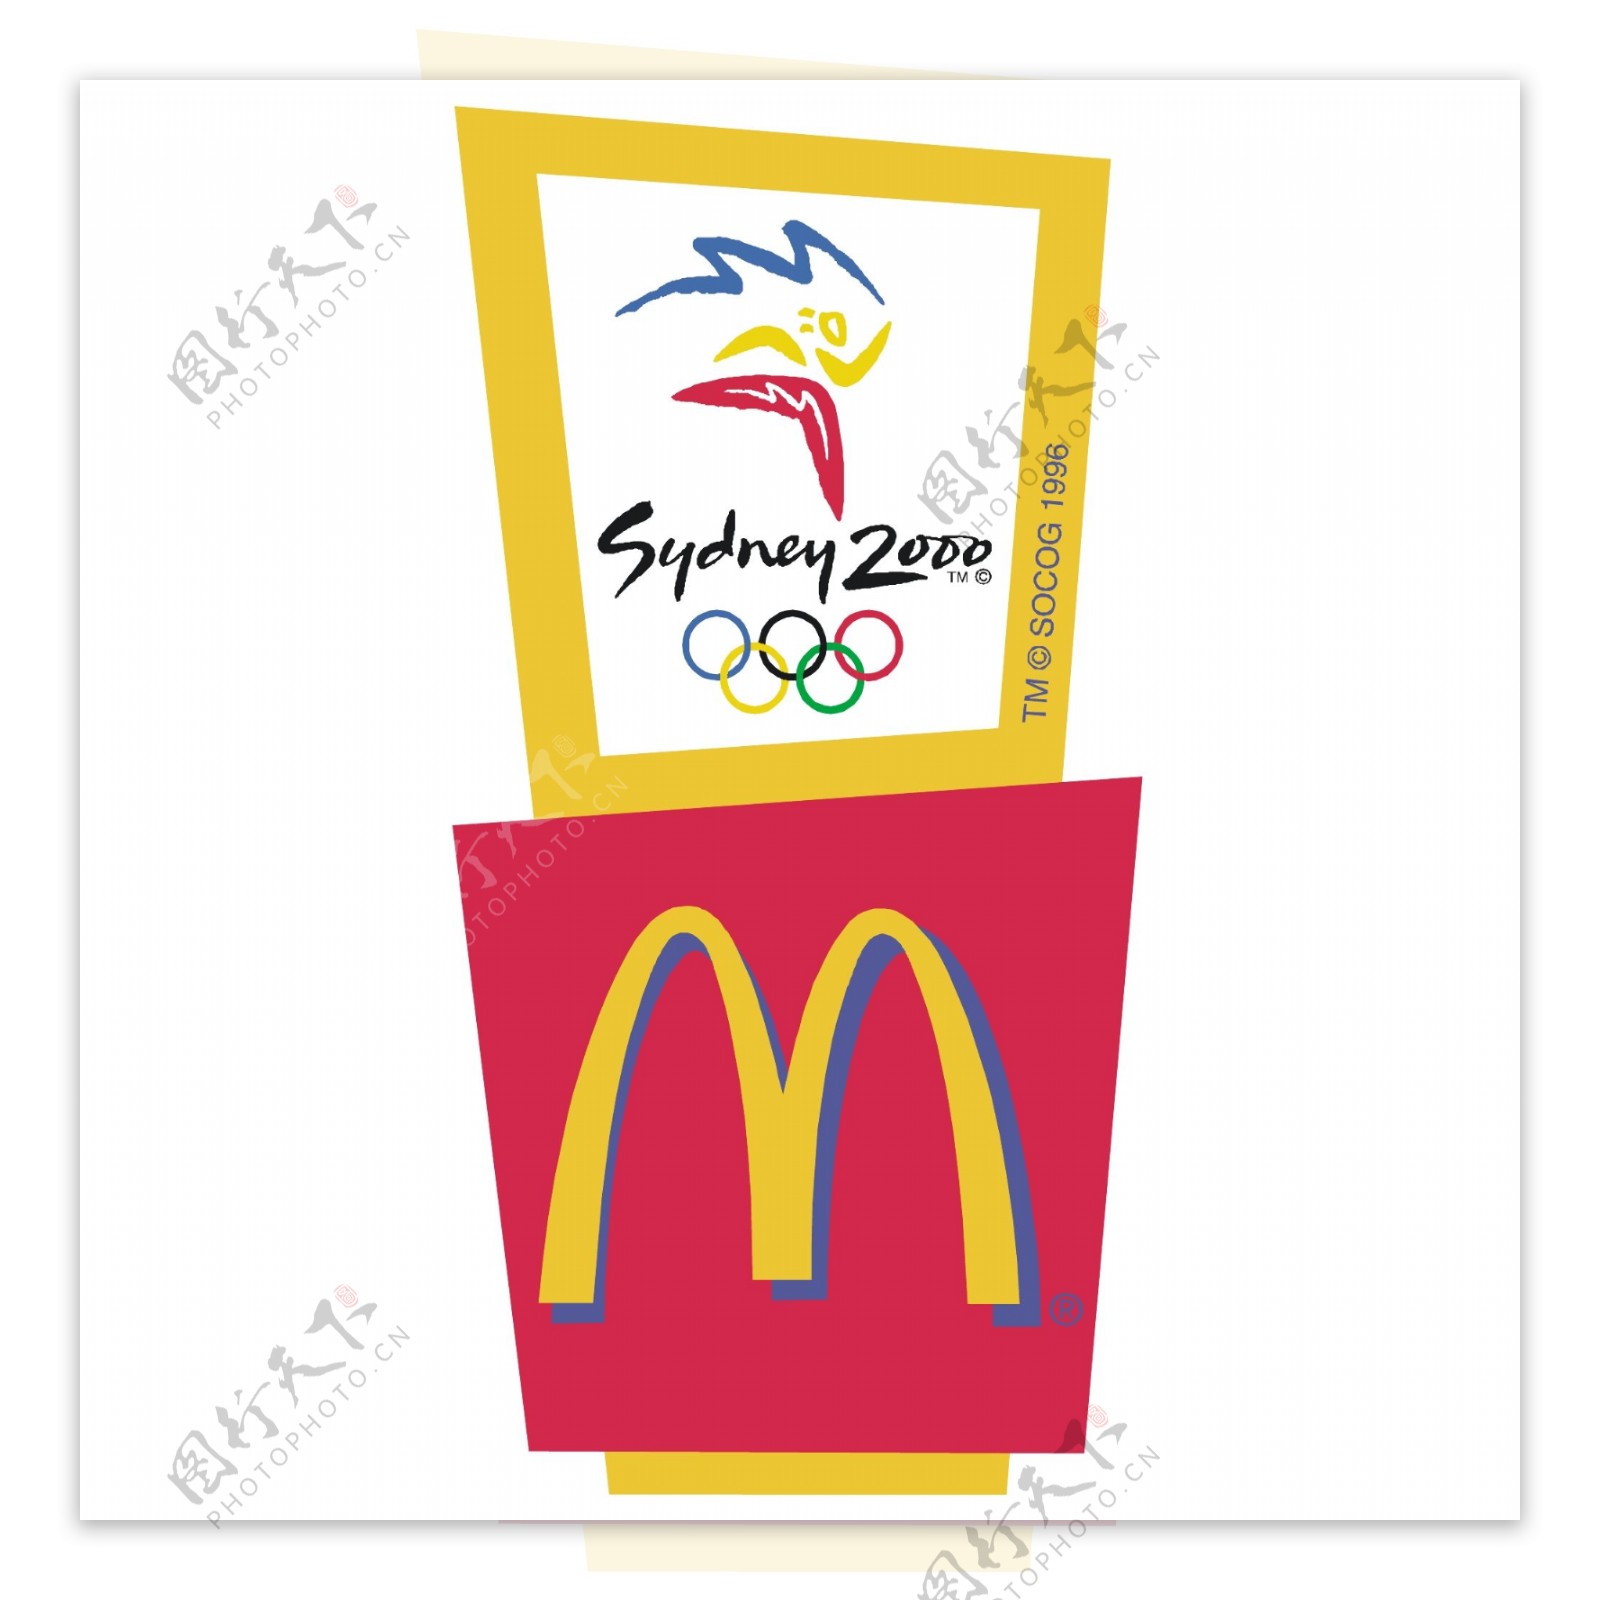 麦当劳赞助悉尼2000